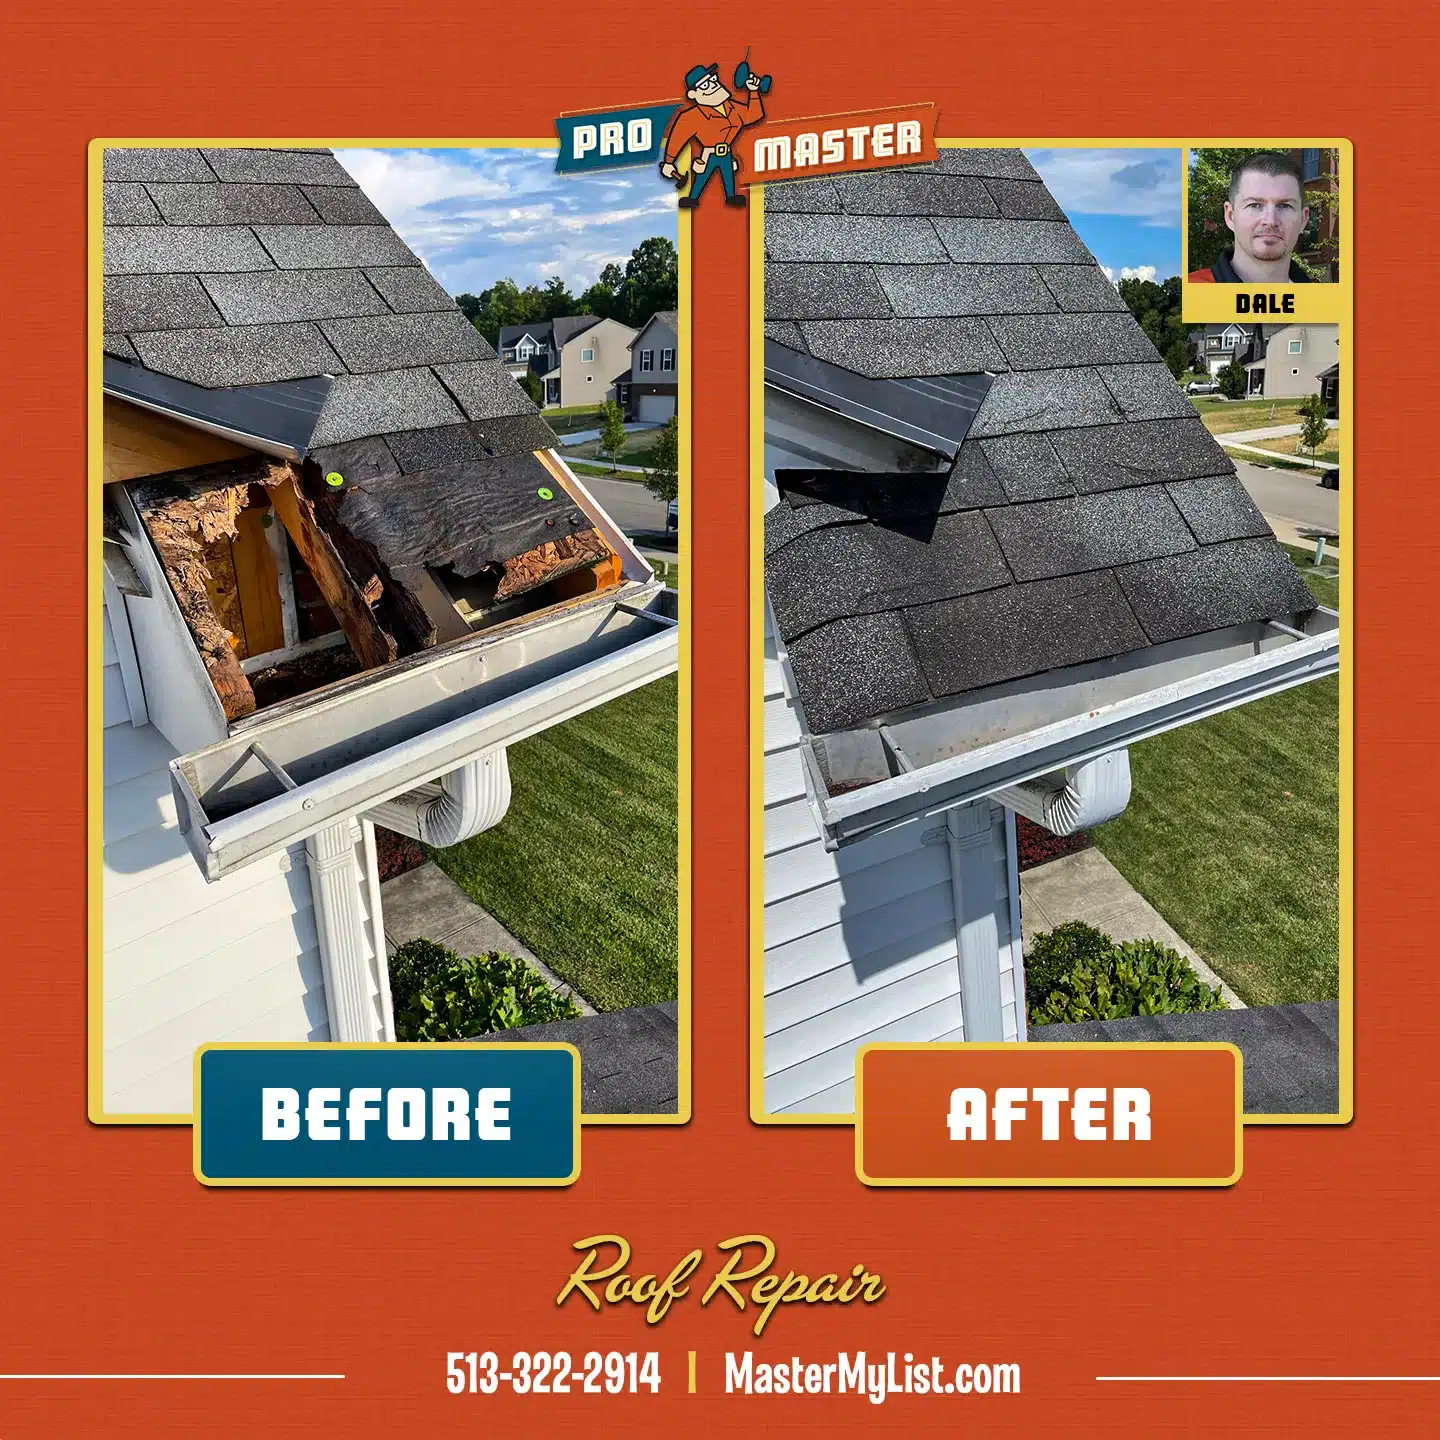 Roof Repair performed by a ProMaster craftsman in Cincinnati, OH